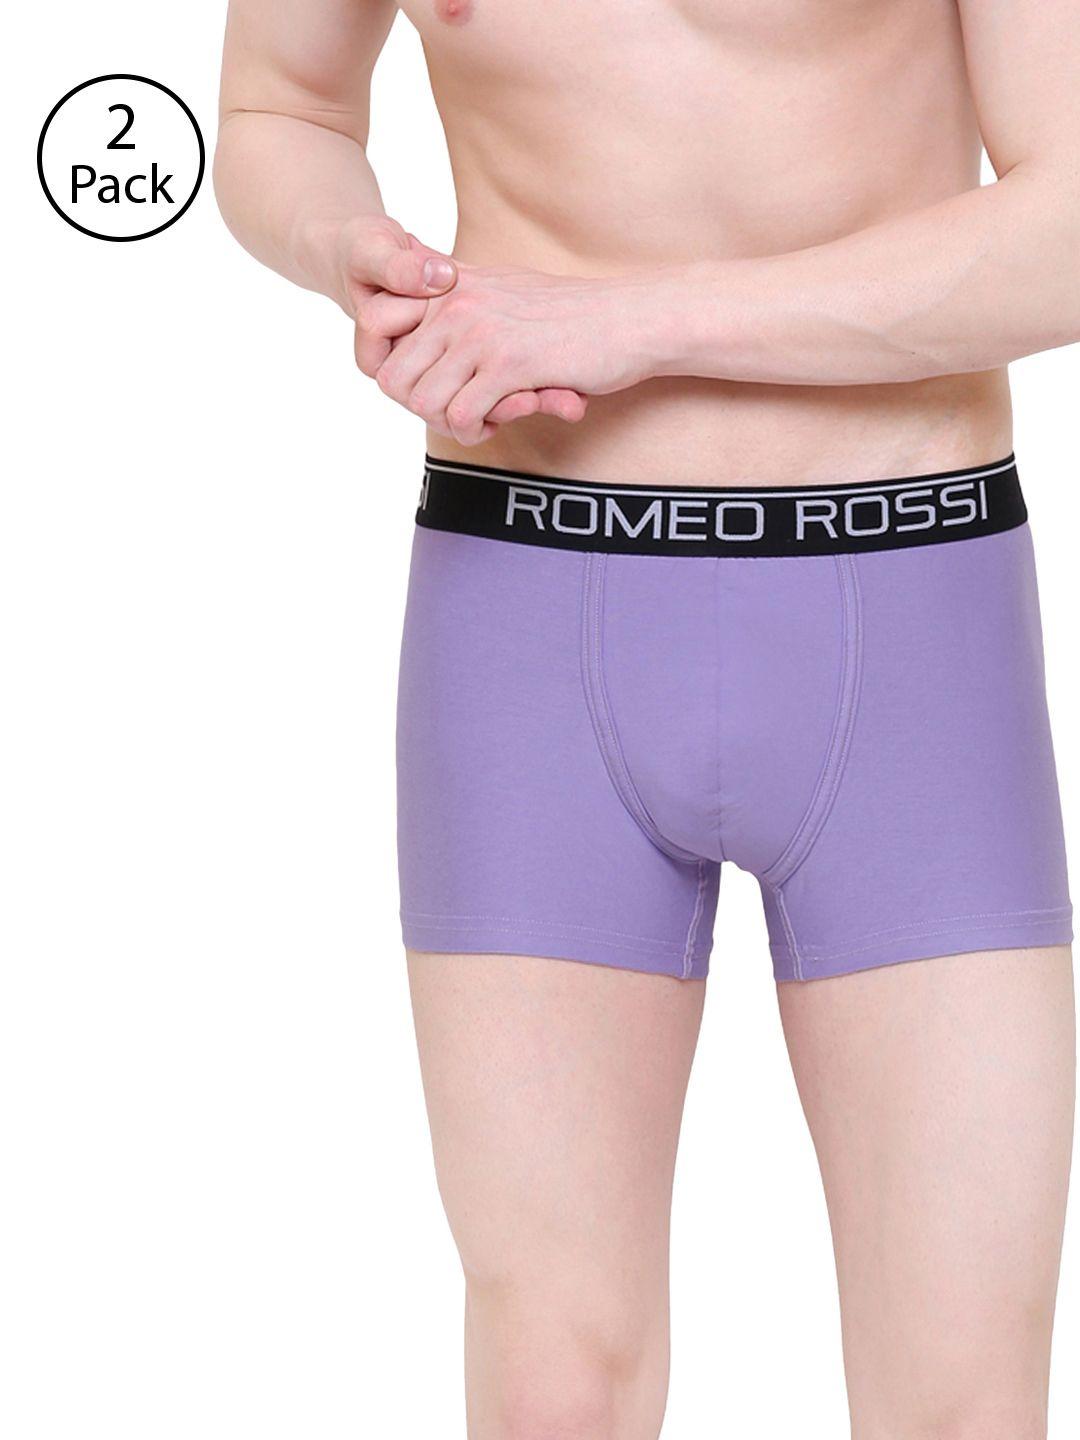 romeo rossi men pack of 2 violet solid trunks cltp-2004-vl-2